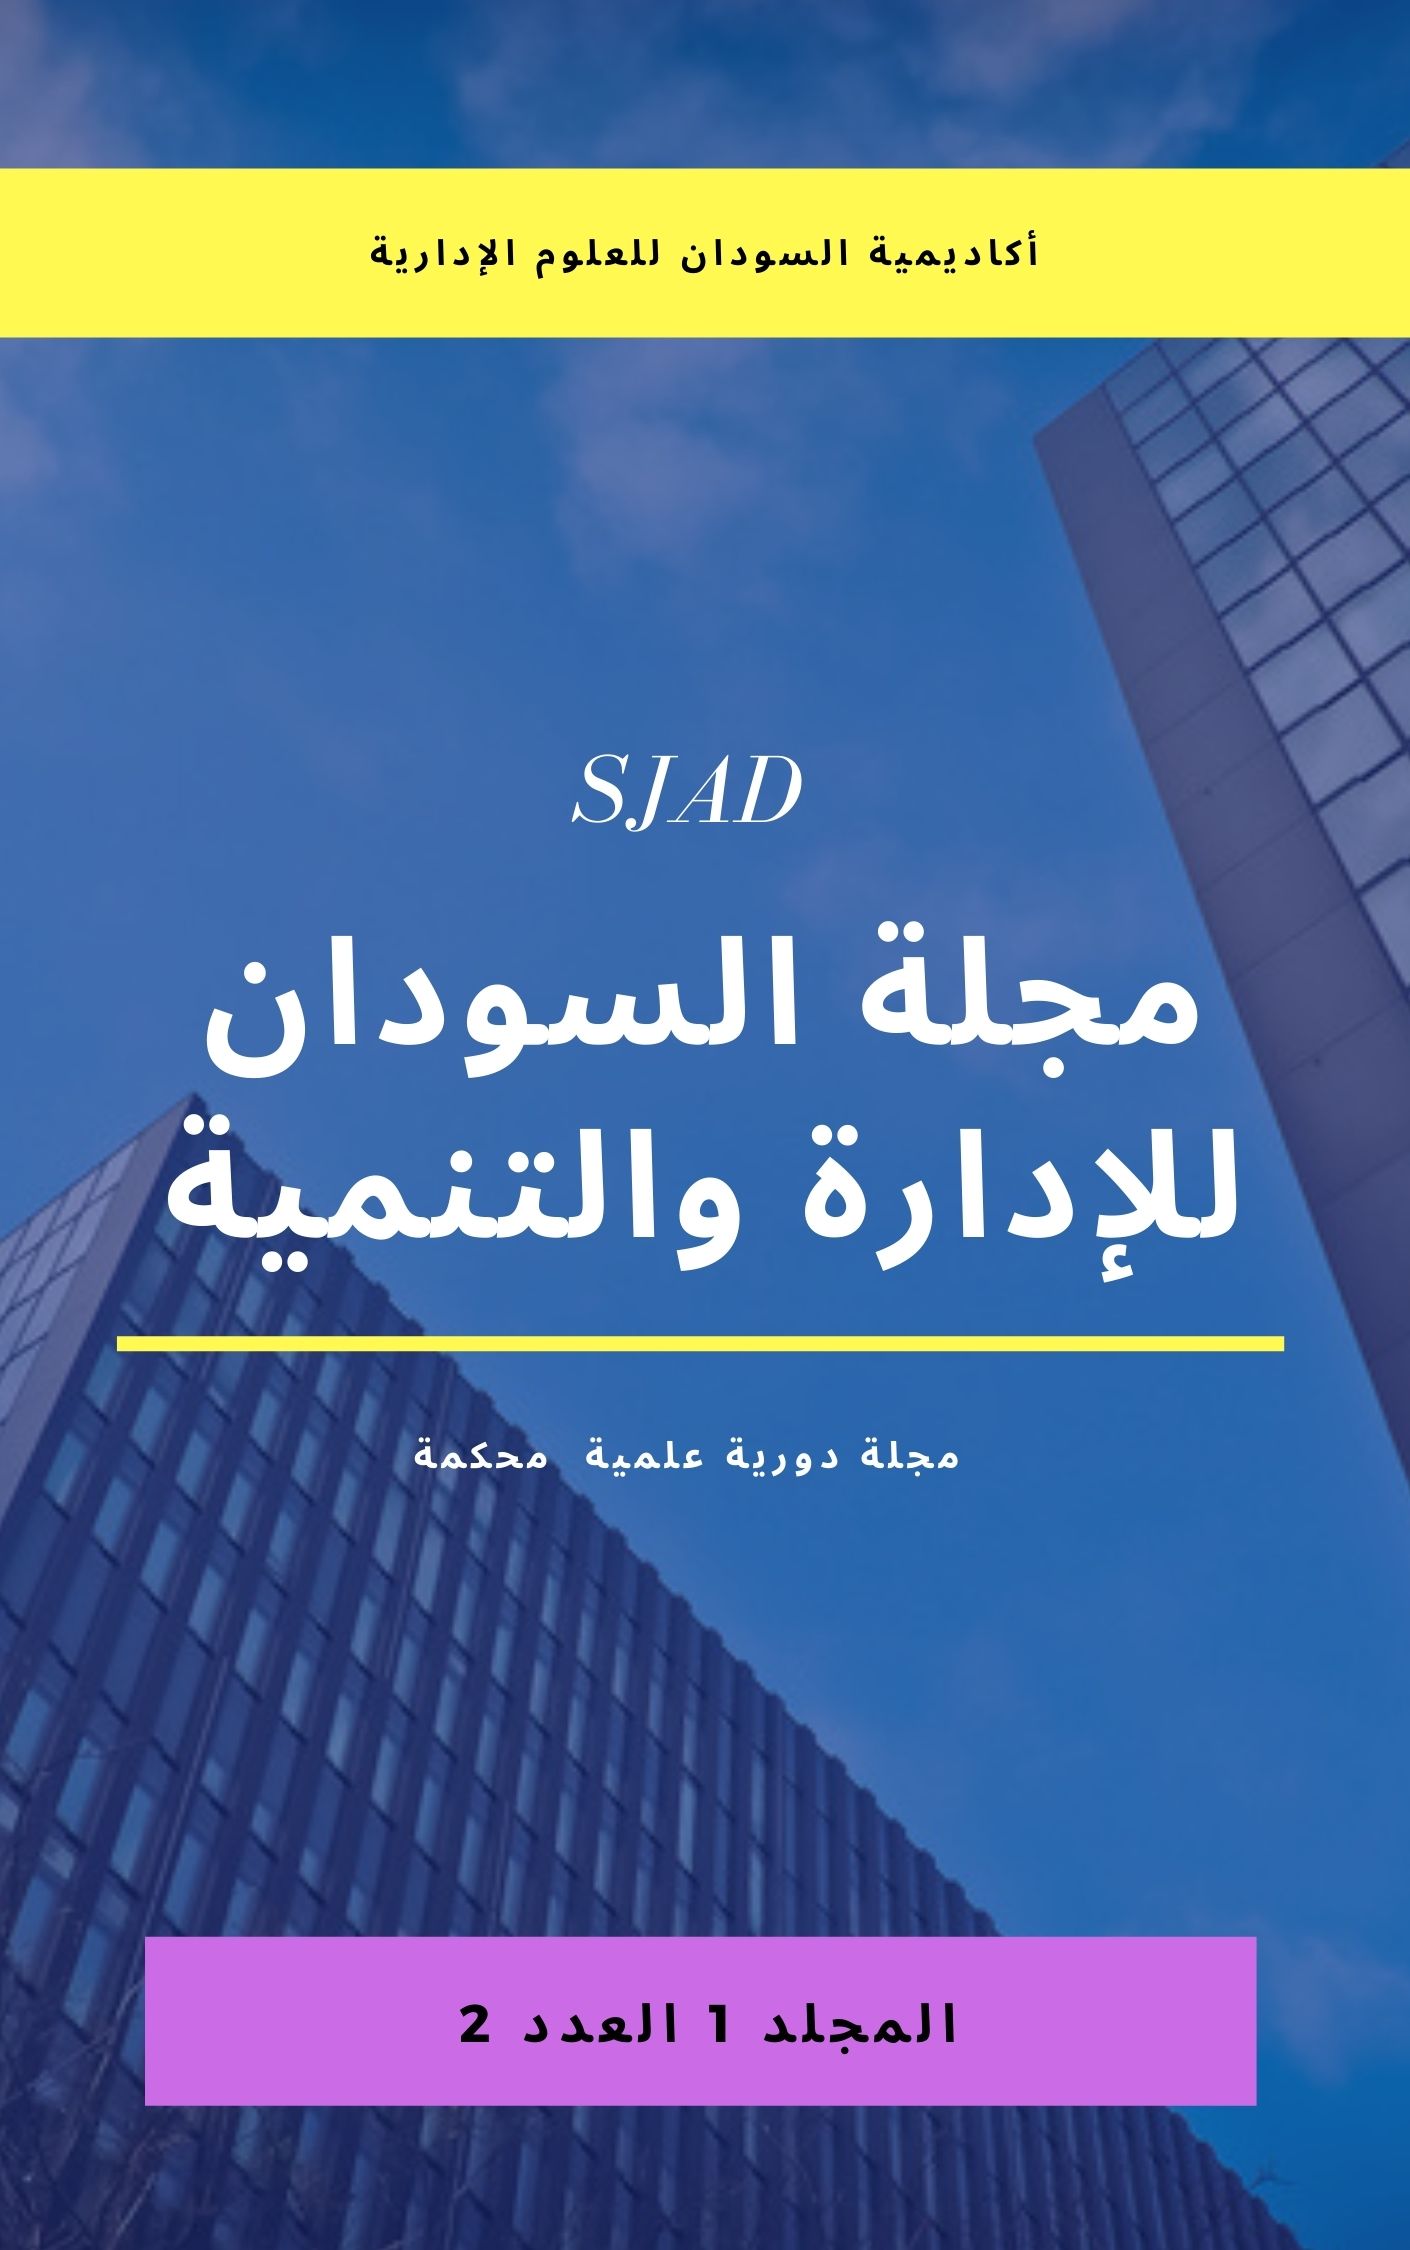 					معاينة مجلد 1 عدد 2 (2): مجلة السودان للإدارة  والتنمية
				